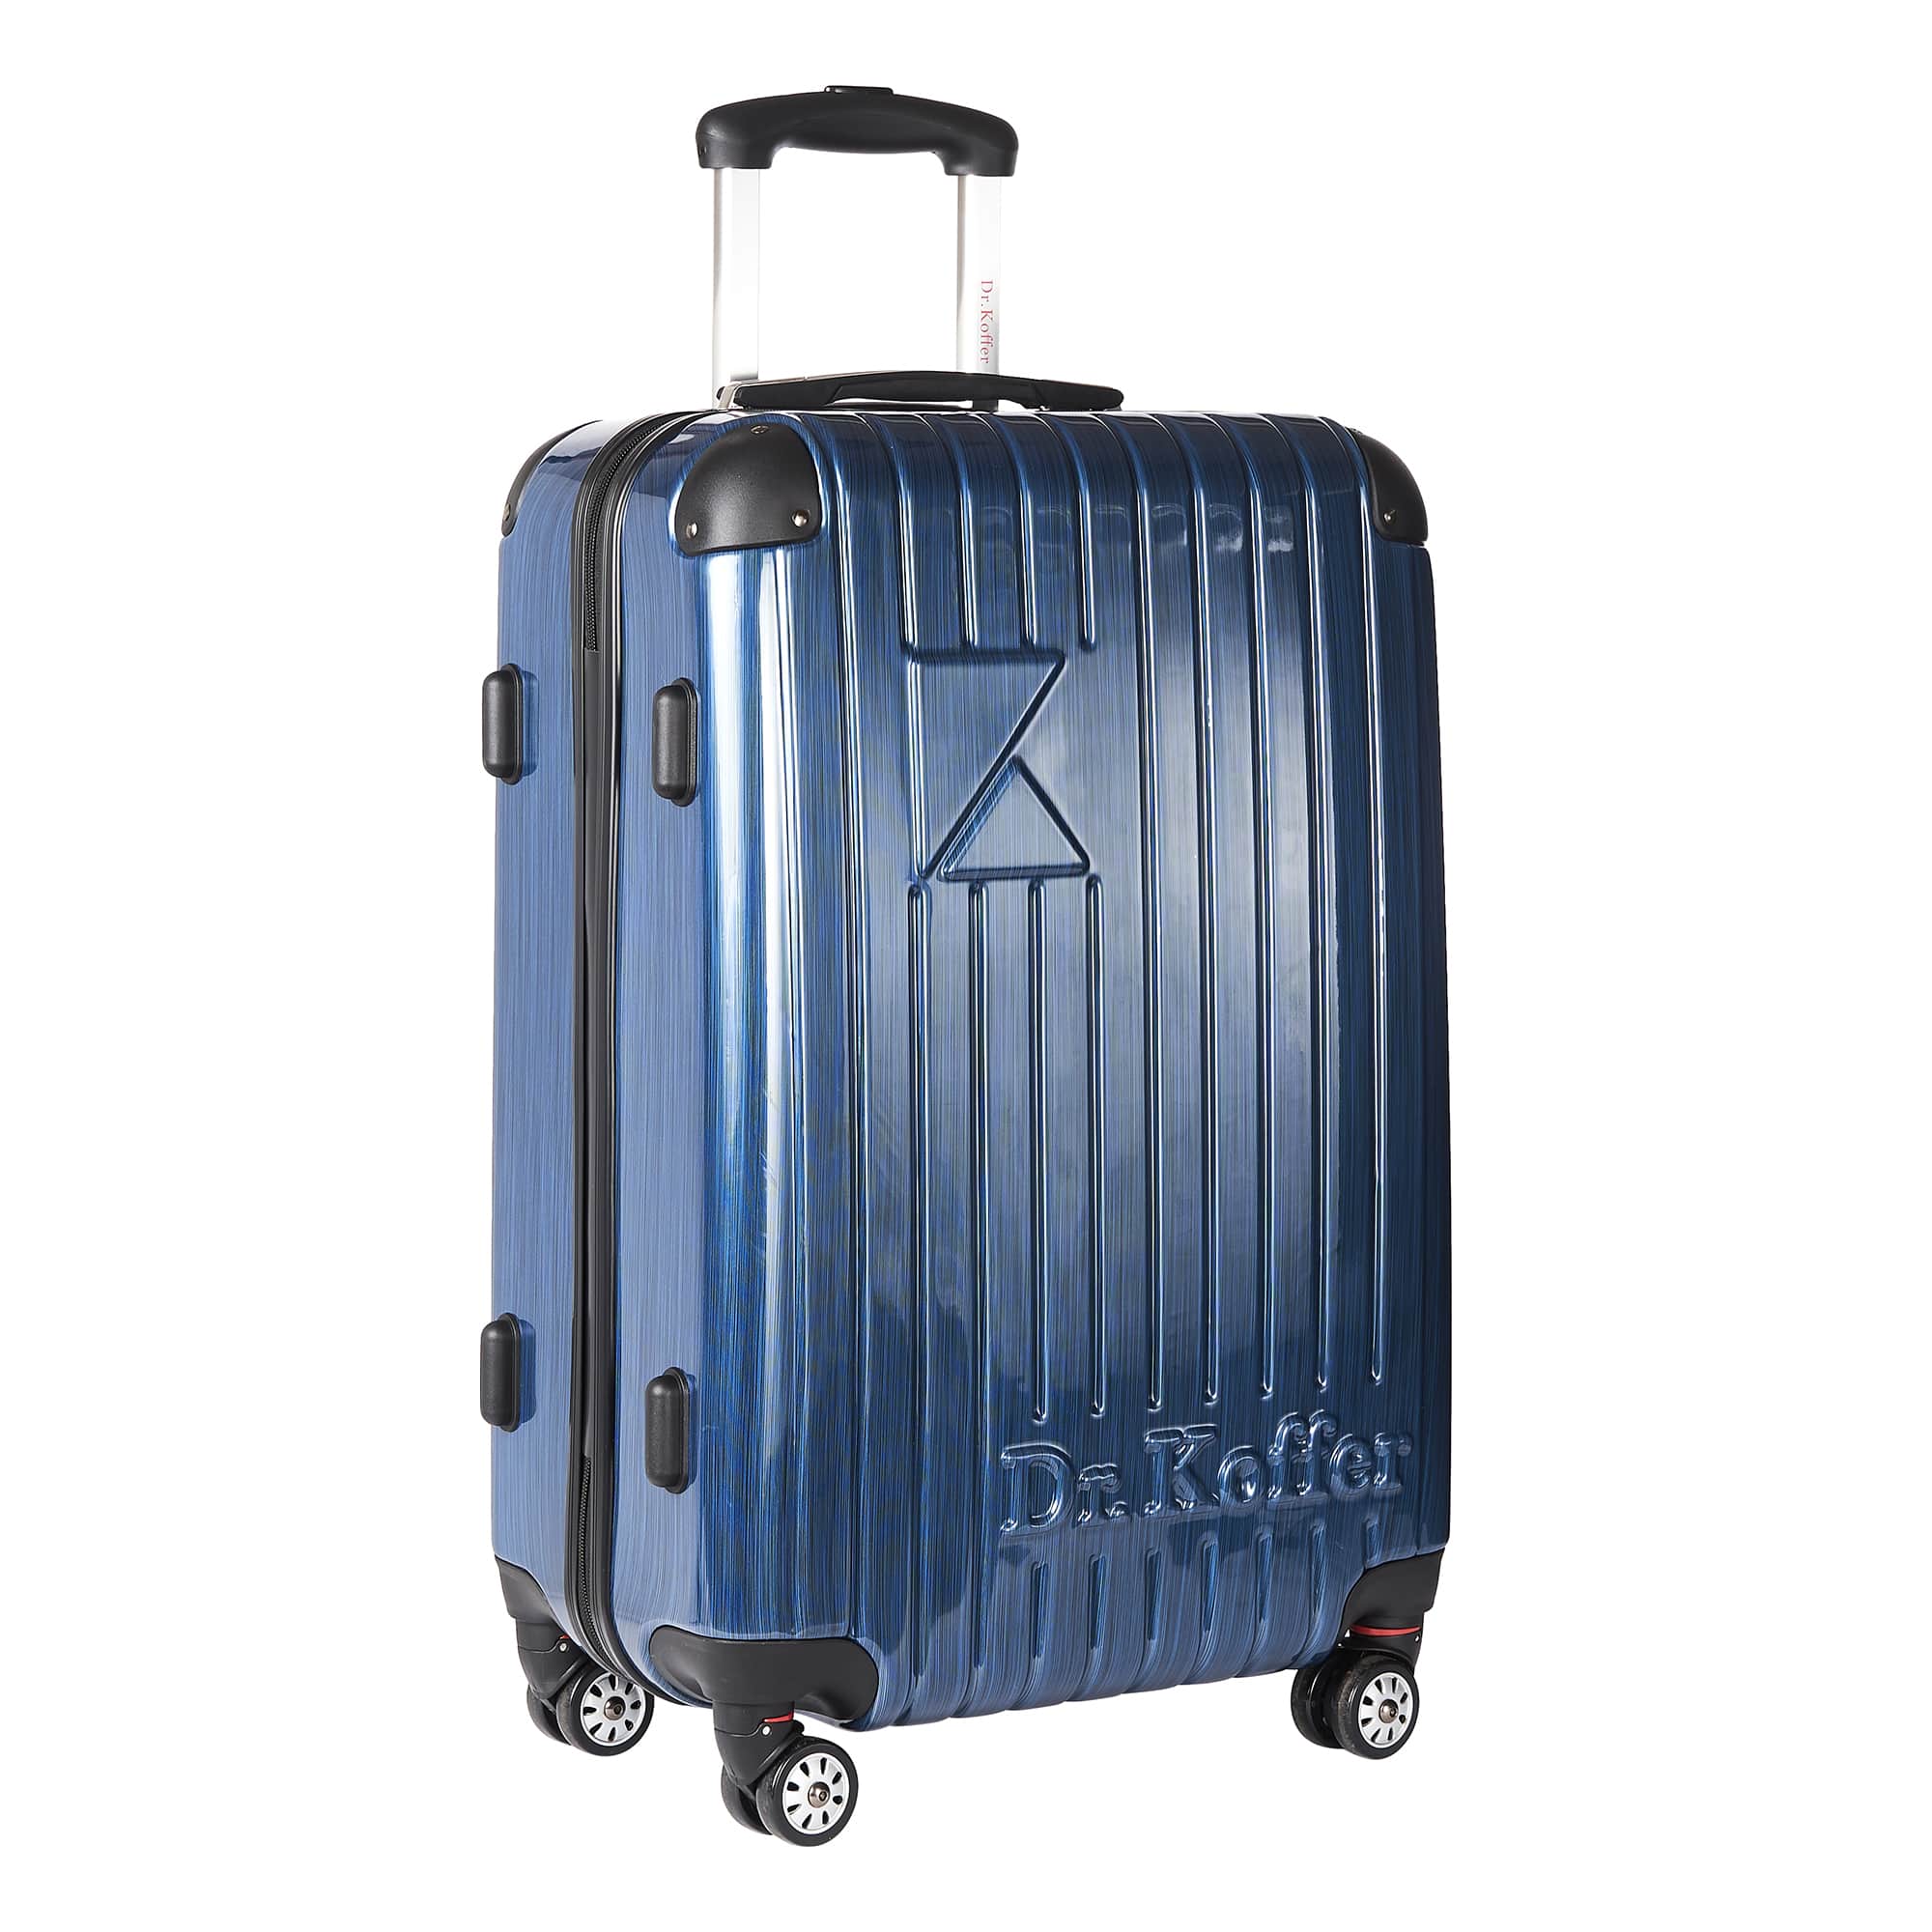 Др.Коффер L102TC28-250-60 чемодан, цвет синий